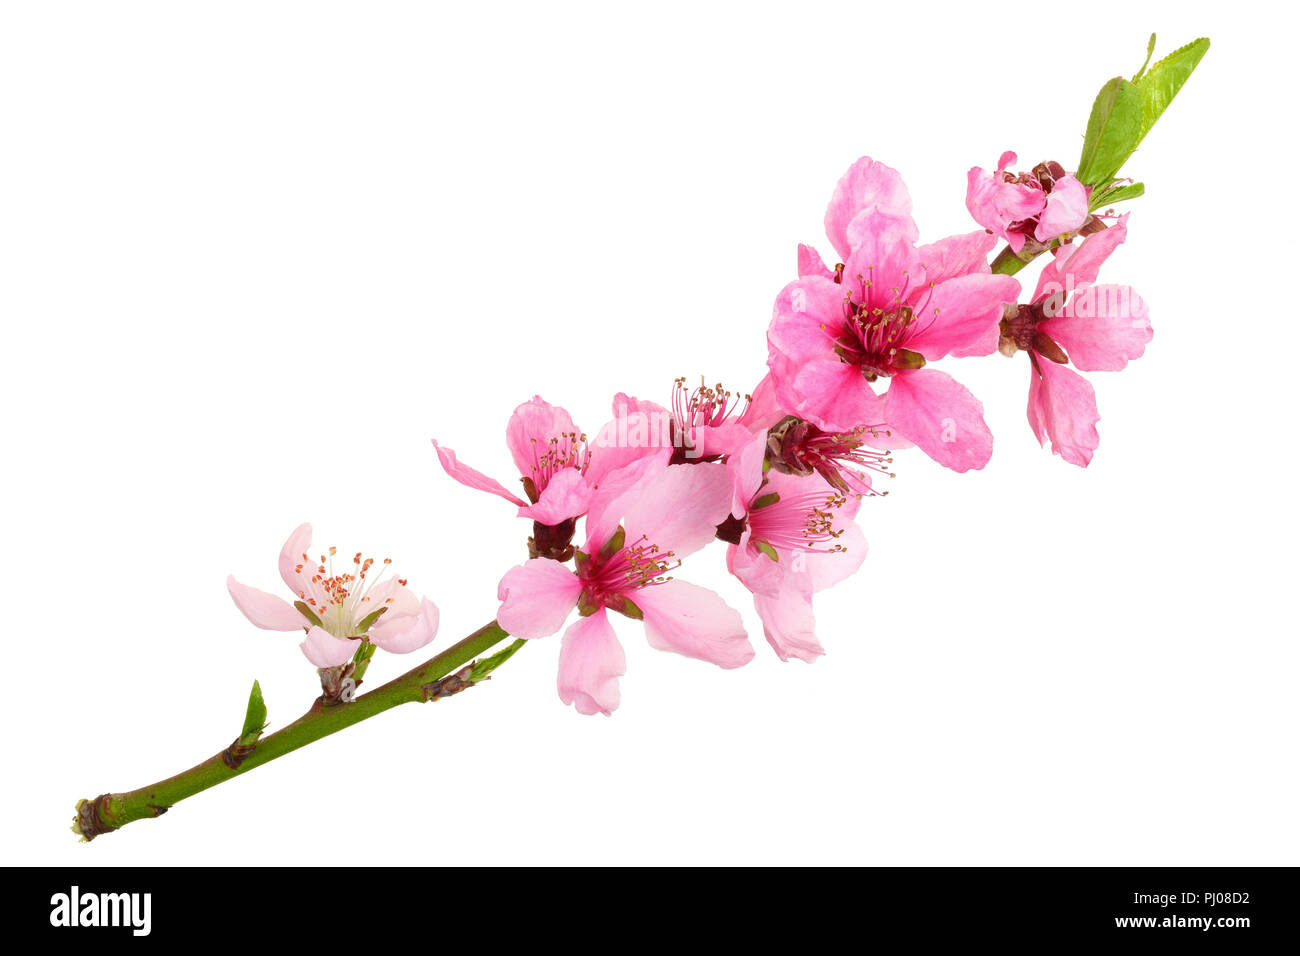 Nếu bạn là tín đồ của văn hóa Nhật Bản, chắc chắn sẽ không thể bỏ qua bức hình mang tên Hoa Anh Đào (Sakura). Những cây hoa đang đua nhau tung hoành trên bầu trời xanh rực rỡ sẽ khiến bạn như lạc vào một không gian tiên cảnh, cảm nhận được sự đẹp và tuyệt vời của văn hóa đất nước này.